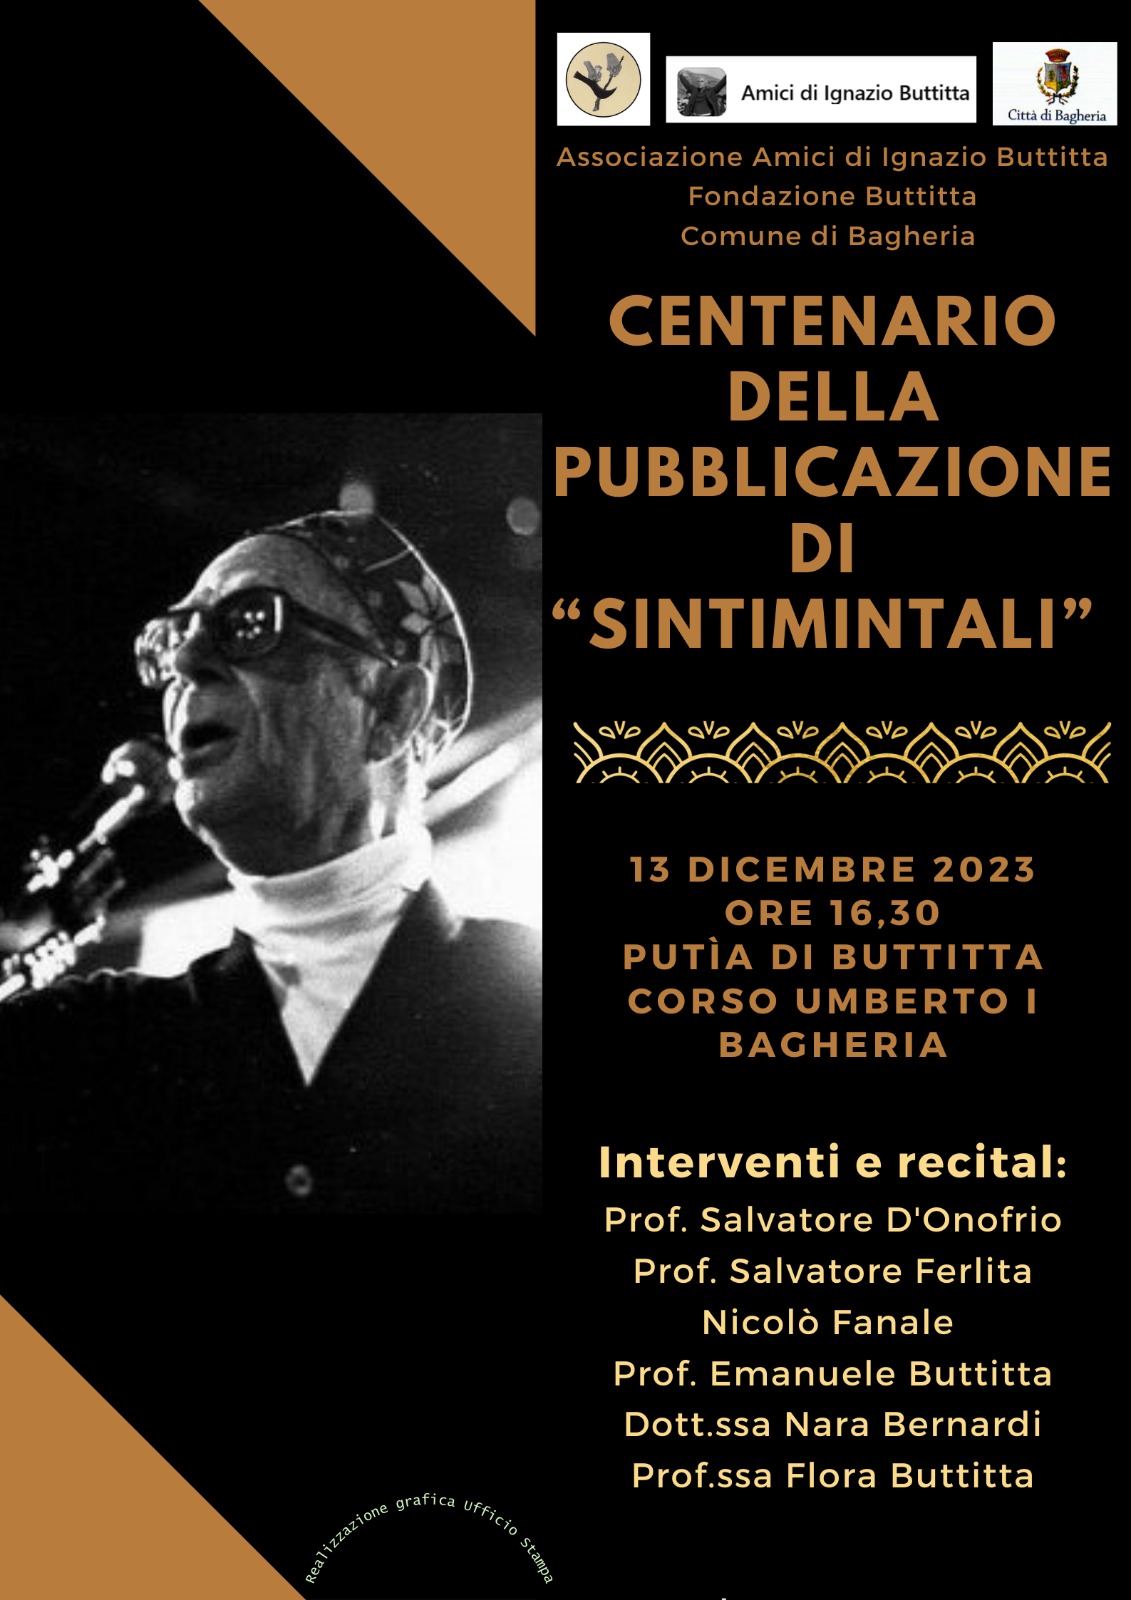 Un seminario con recital per festeggiare i 100 anni di "Sintimintali" di Ignazio Buttitta presso la putìa 